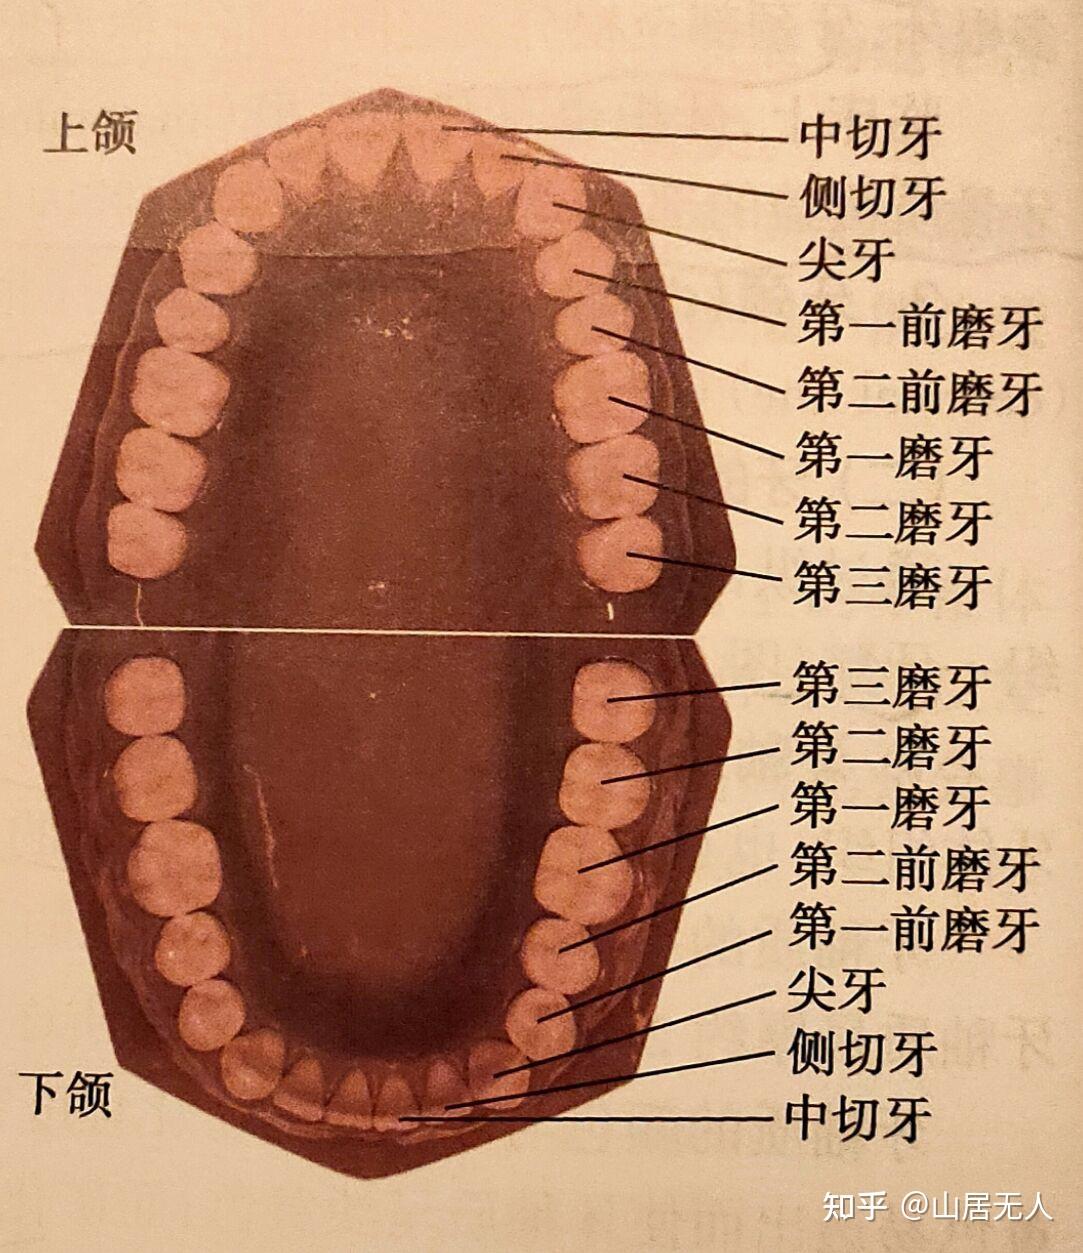 上下左右共8颗,分别是:上颌中切牙,上颌侧切牙,下颌中切牙,下颌侧切牙